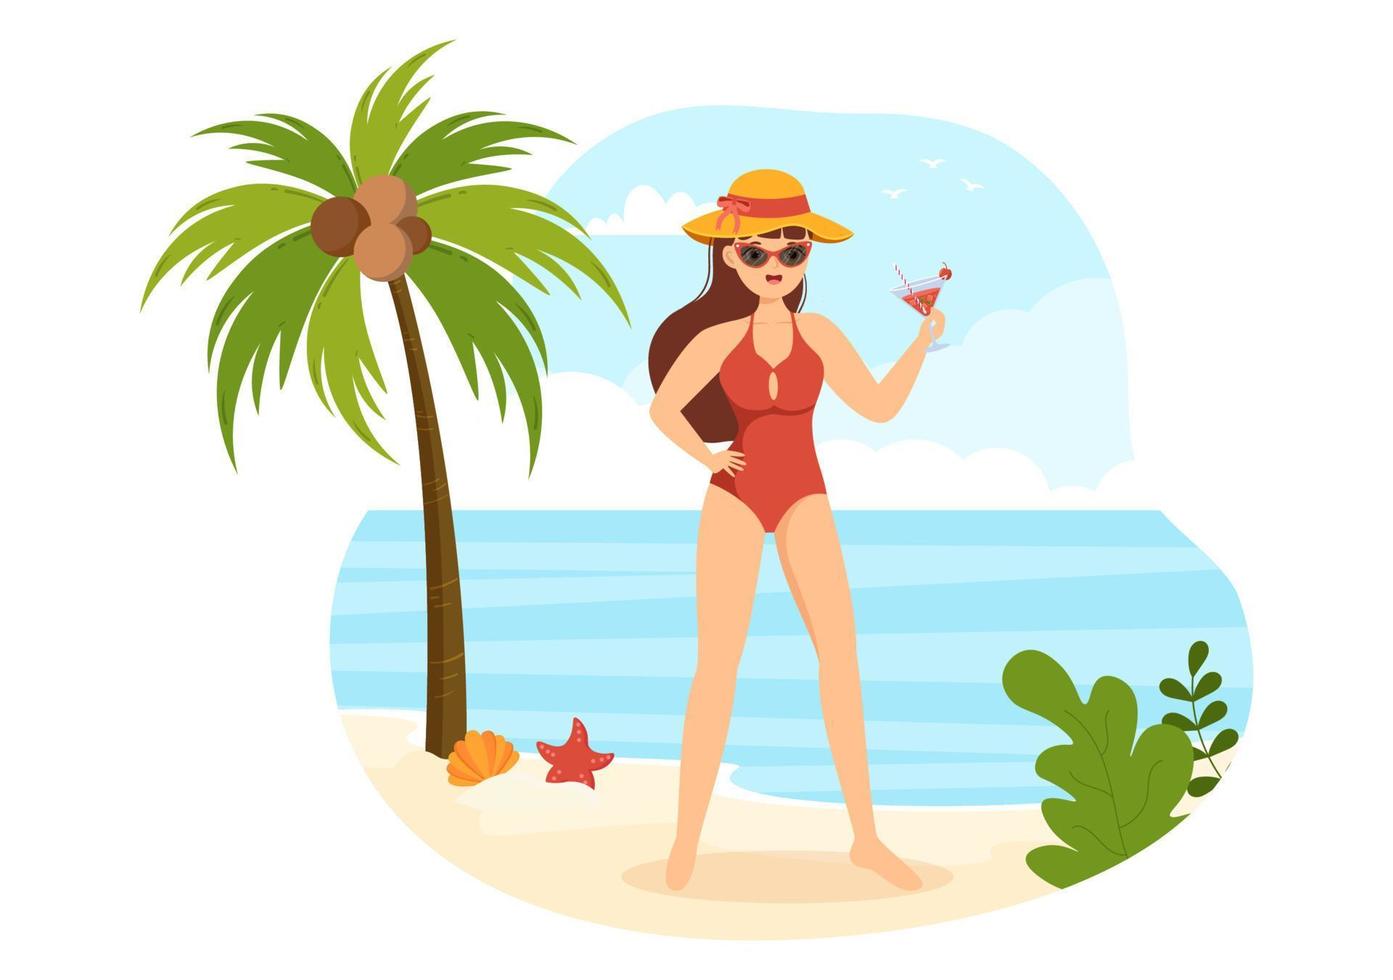 traje de baño con diferentes diseños de bikinis y trajes de baño para  mujeres en la playa de verano en dibujos animados de estilo plano  ilustración de plantillas dibujadas a mano 14057790